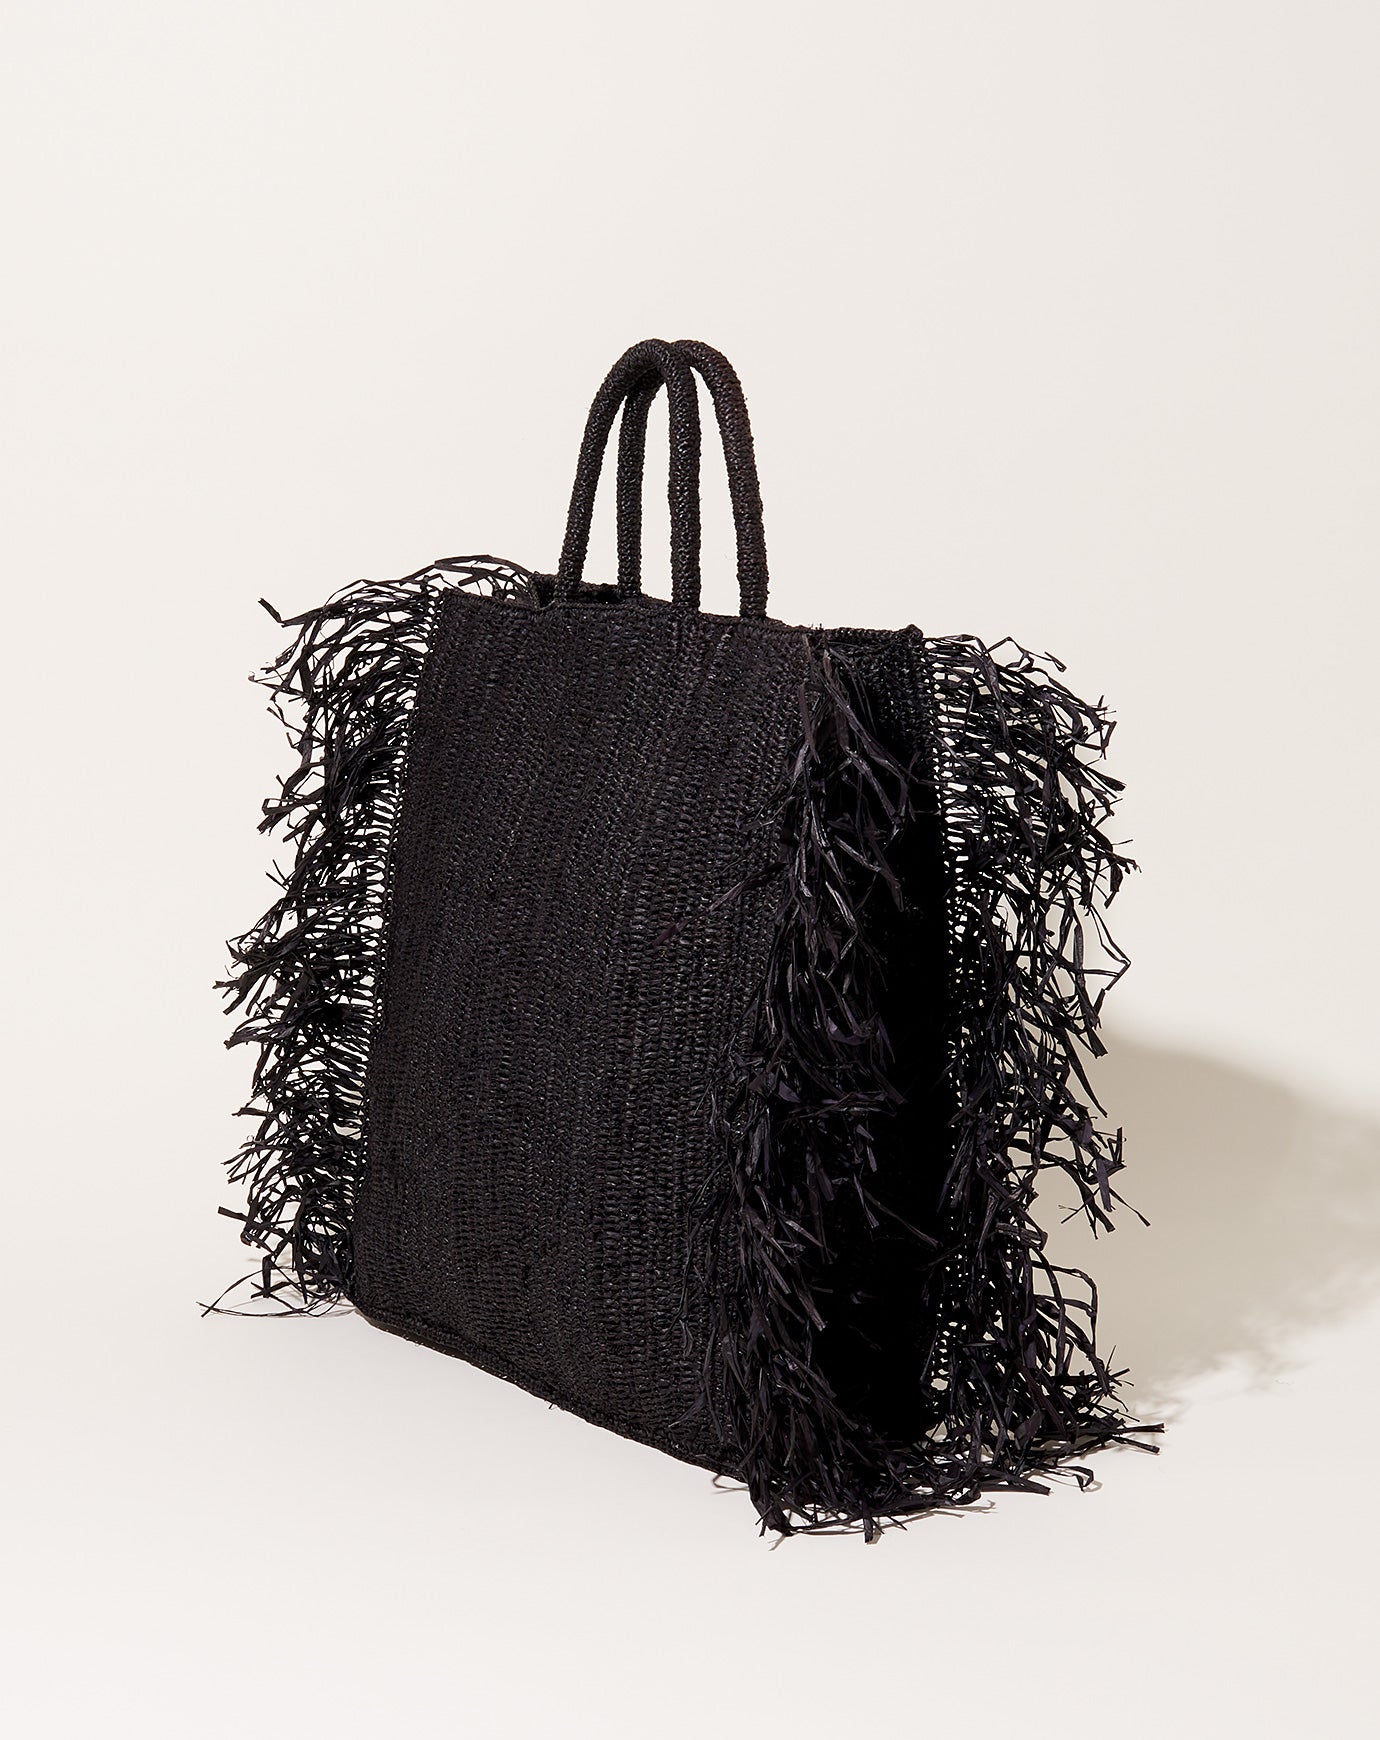 Modern Weaving Straight Fringe Square Bag in Black